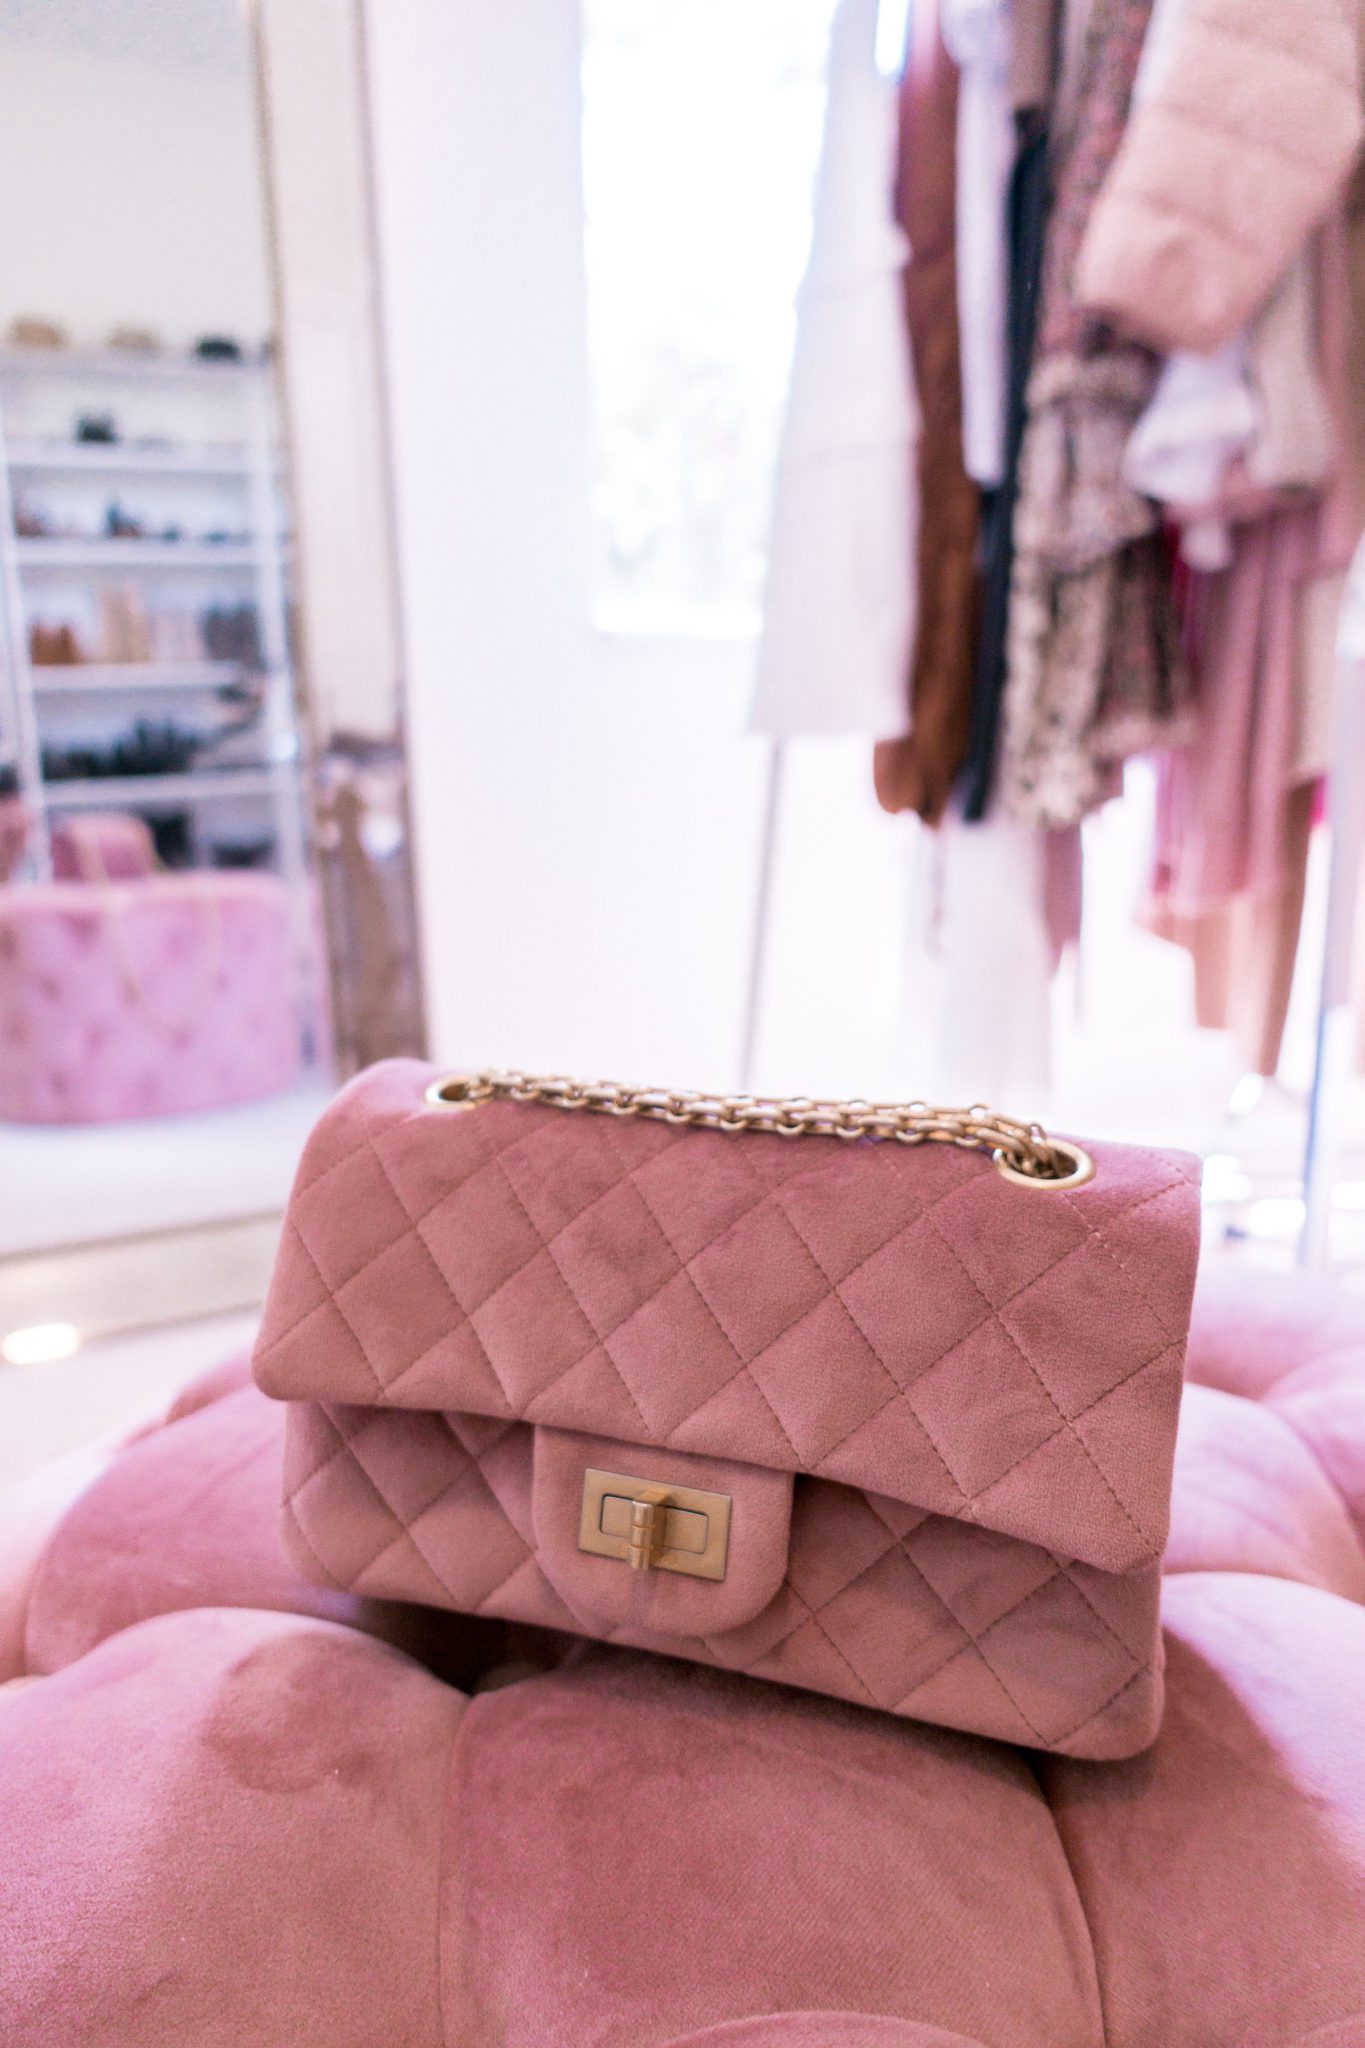 Chanel 2.55 Mini Review - A Fashion Lifestyle Blog